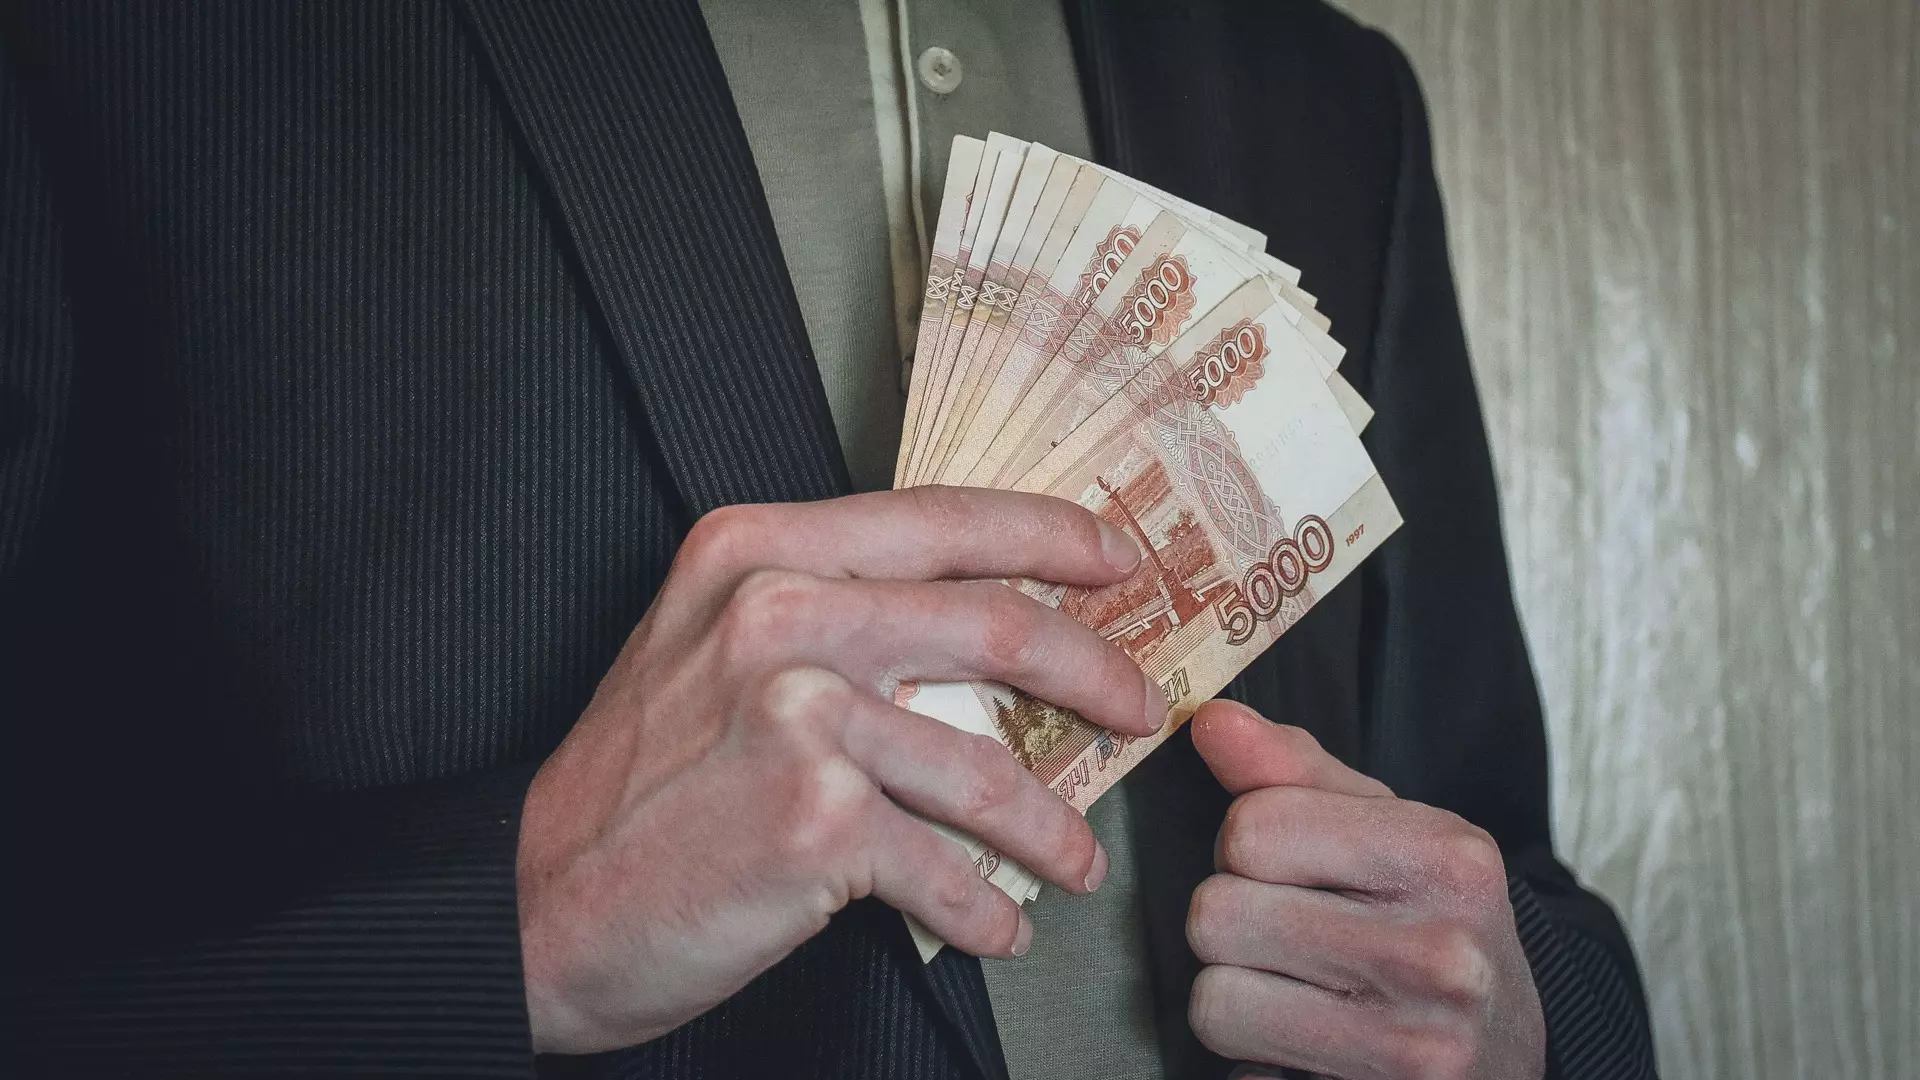 В Екатеринбурге открыта вакансия учителя русского языка с зарплатой 130 тысяч рублей